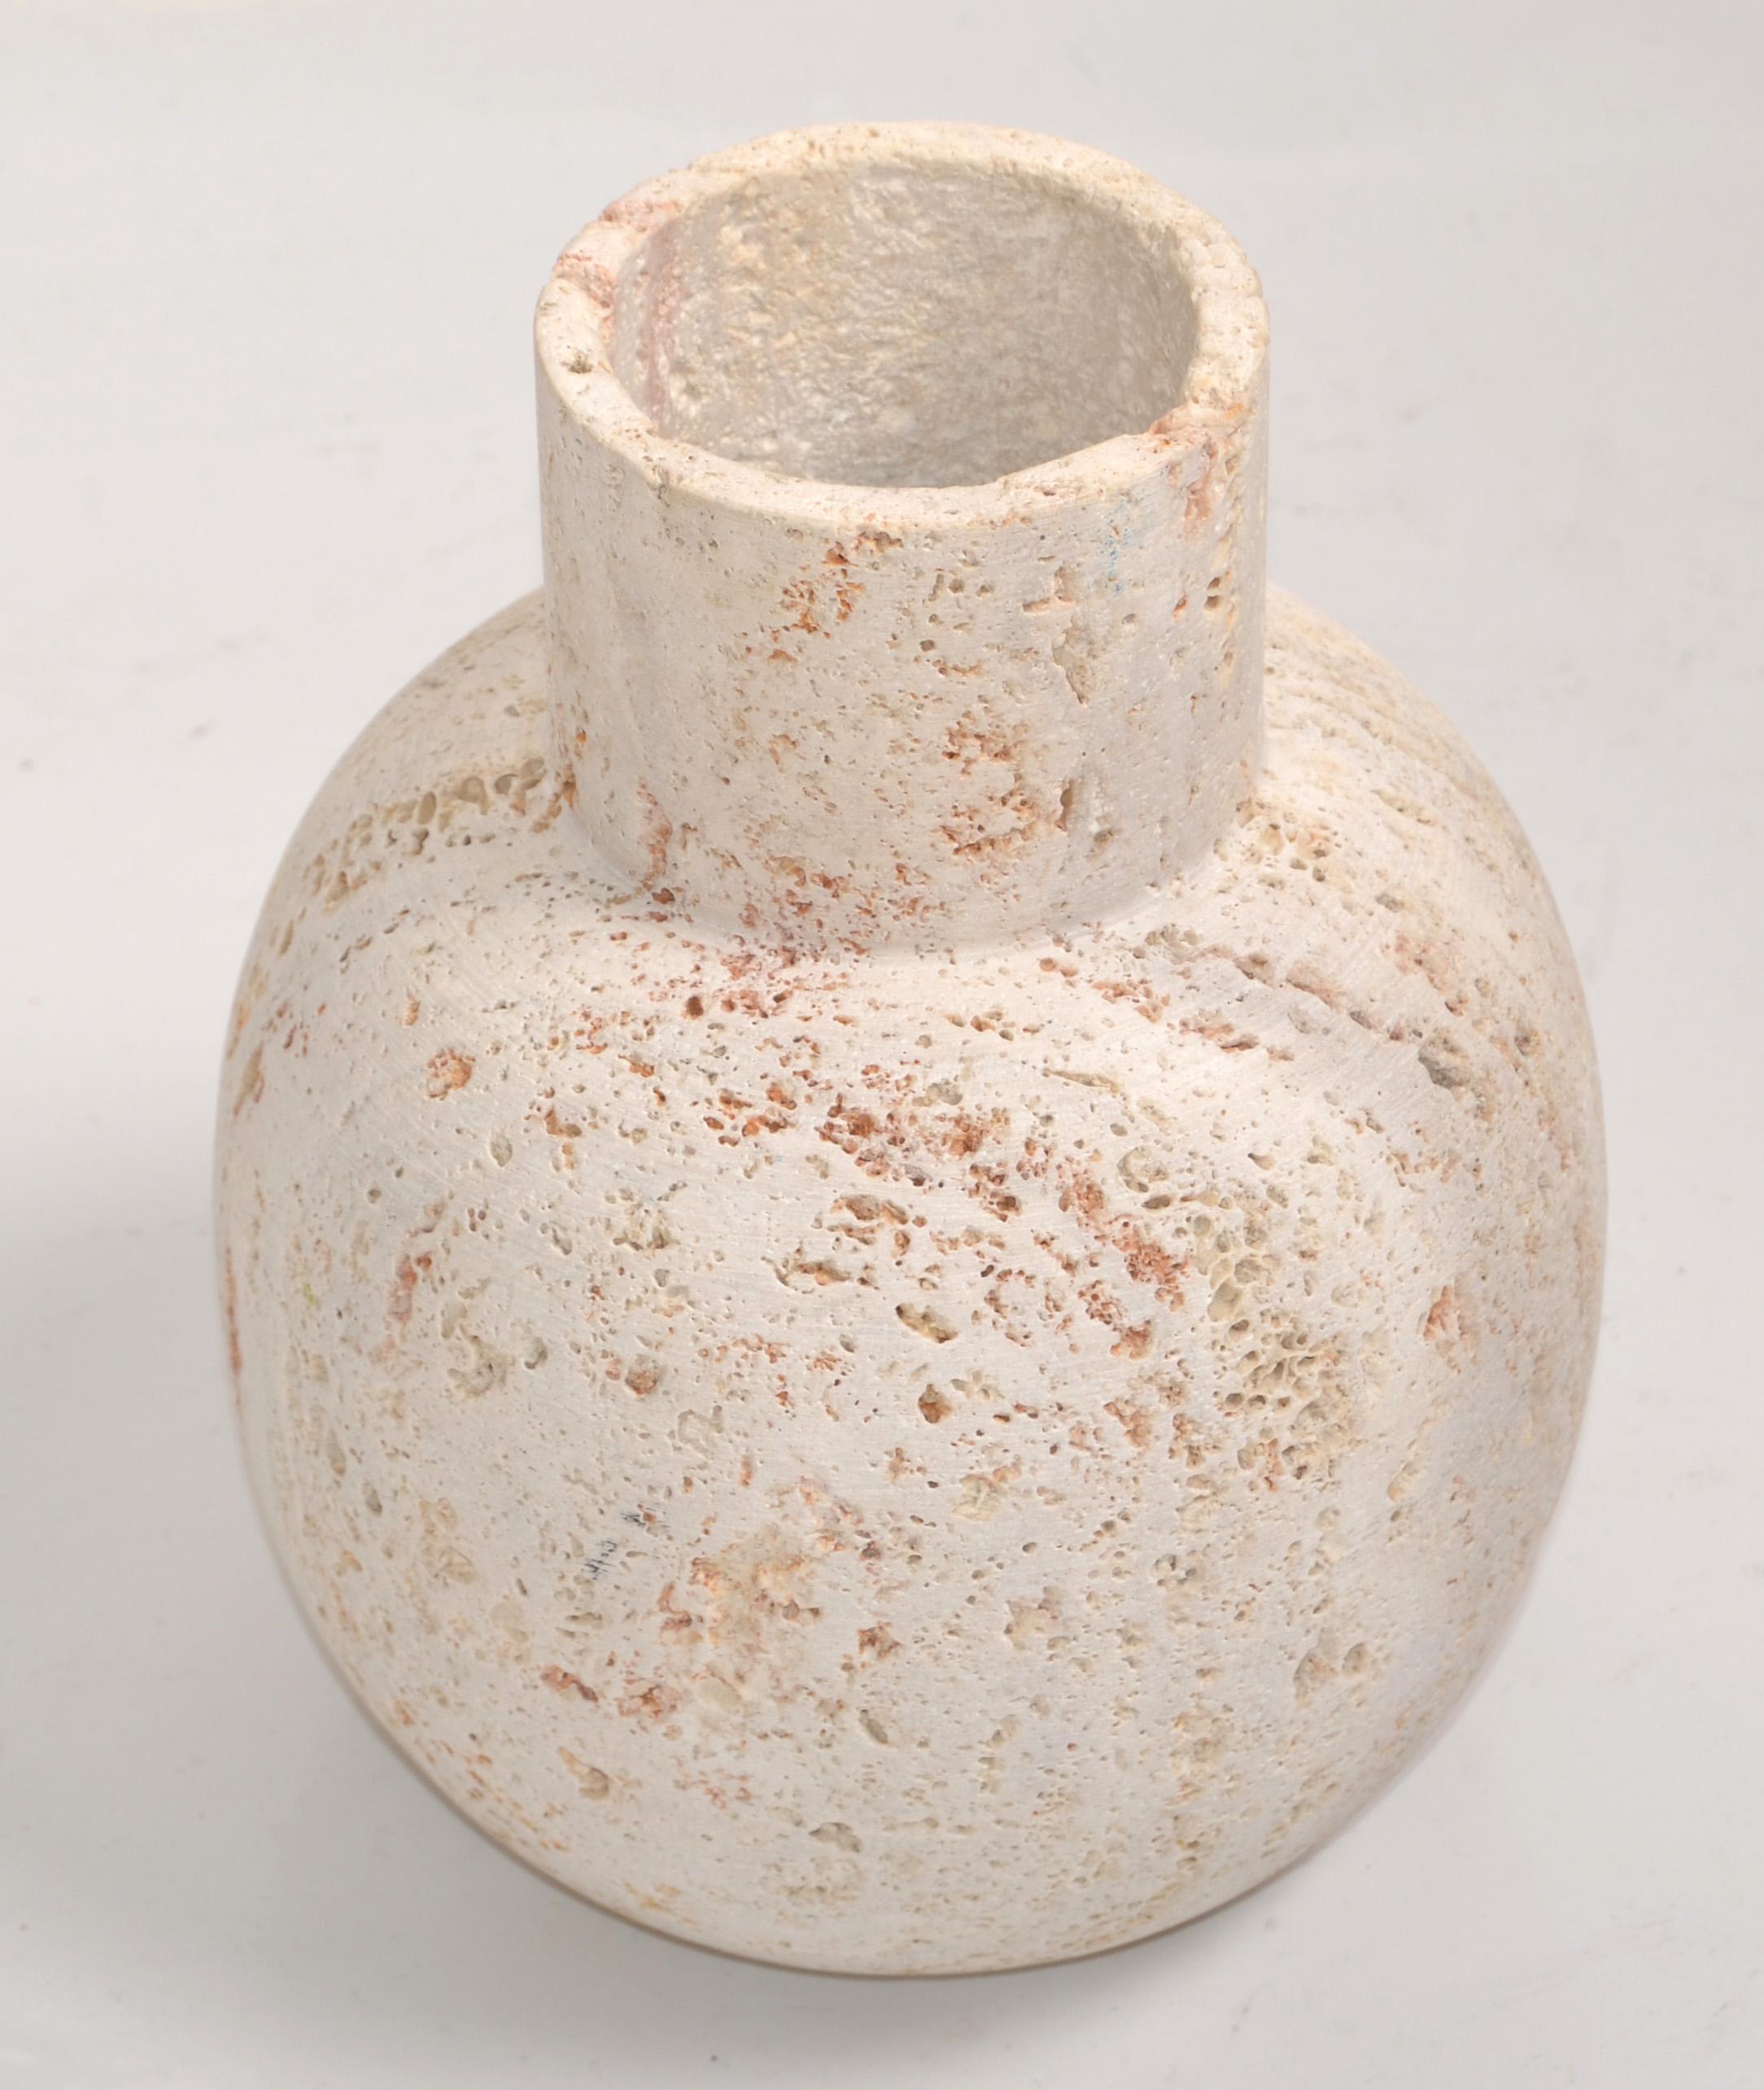 Die italienische klassische Vase Venedig aus Travertin, die Fratelli Manelli für Raymor entworfen hat, ist ein vielseitiges Element mit besonderem Design, das sich von anderen ähnlichen Objekten unterscheidet. 
Eine solche Vase mit besonderem Design